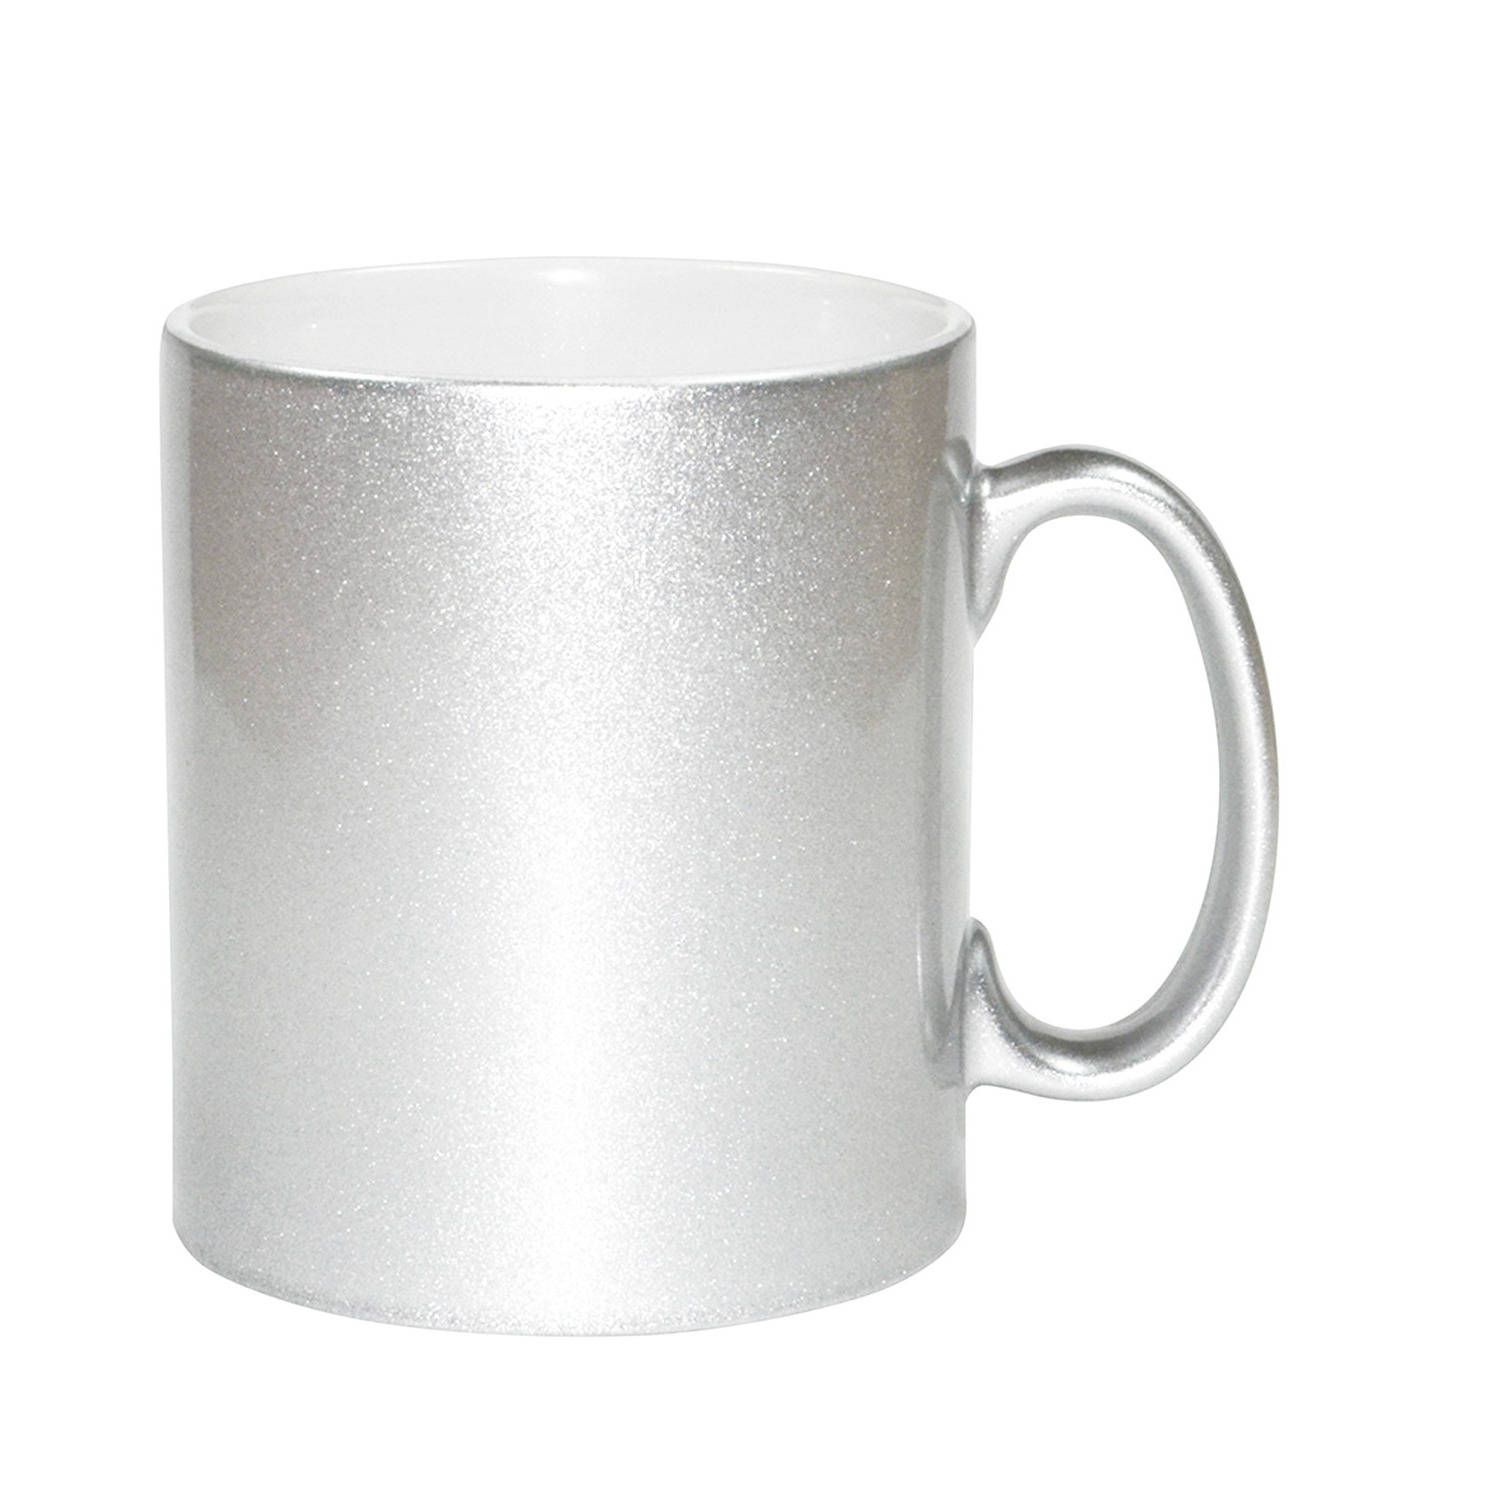 1x stuks zilveren bekers/ koffiemokken 330 ml - Bekers